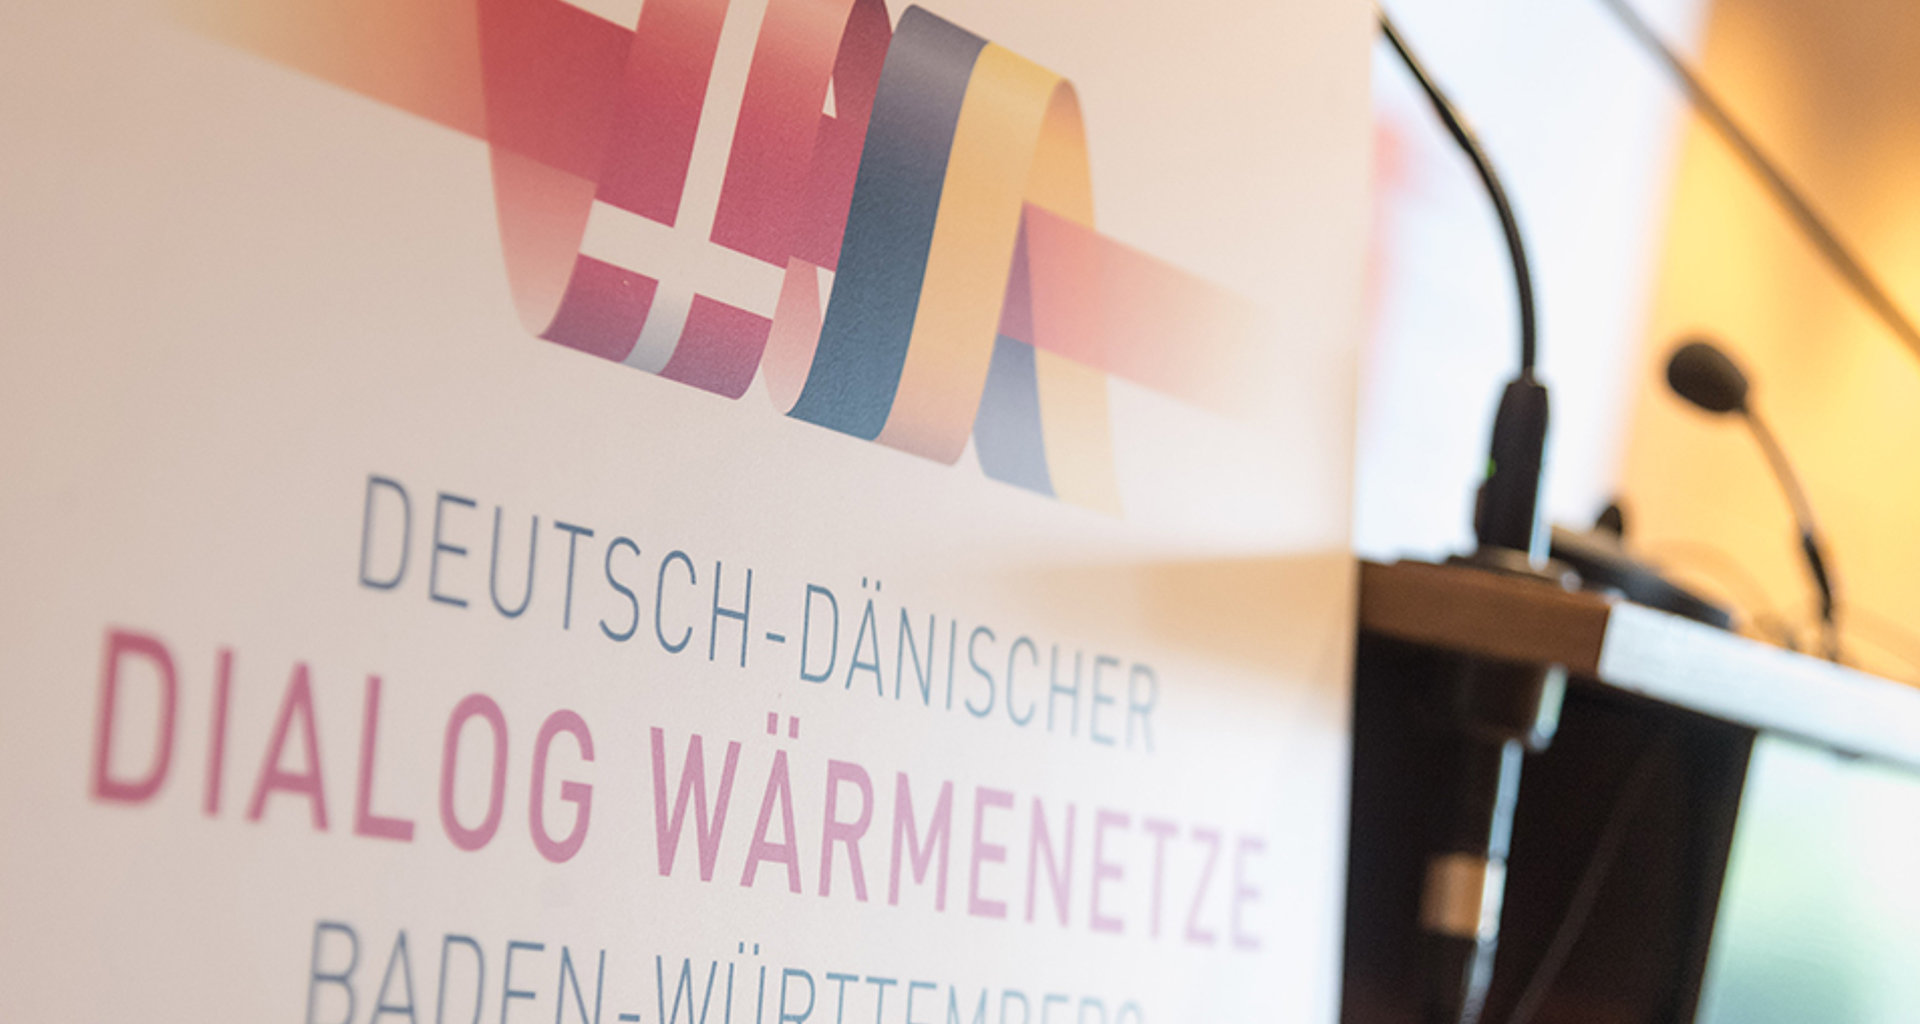 Aufsteller mit der Aufschrift "Deutsch Dänischer Dialog Wärmenetz Baden-Württemberg" neben einem Rednerpult.